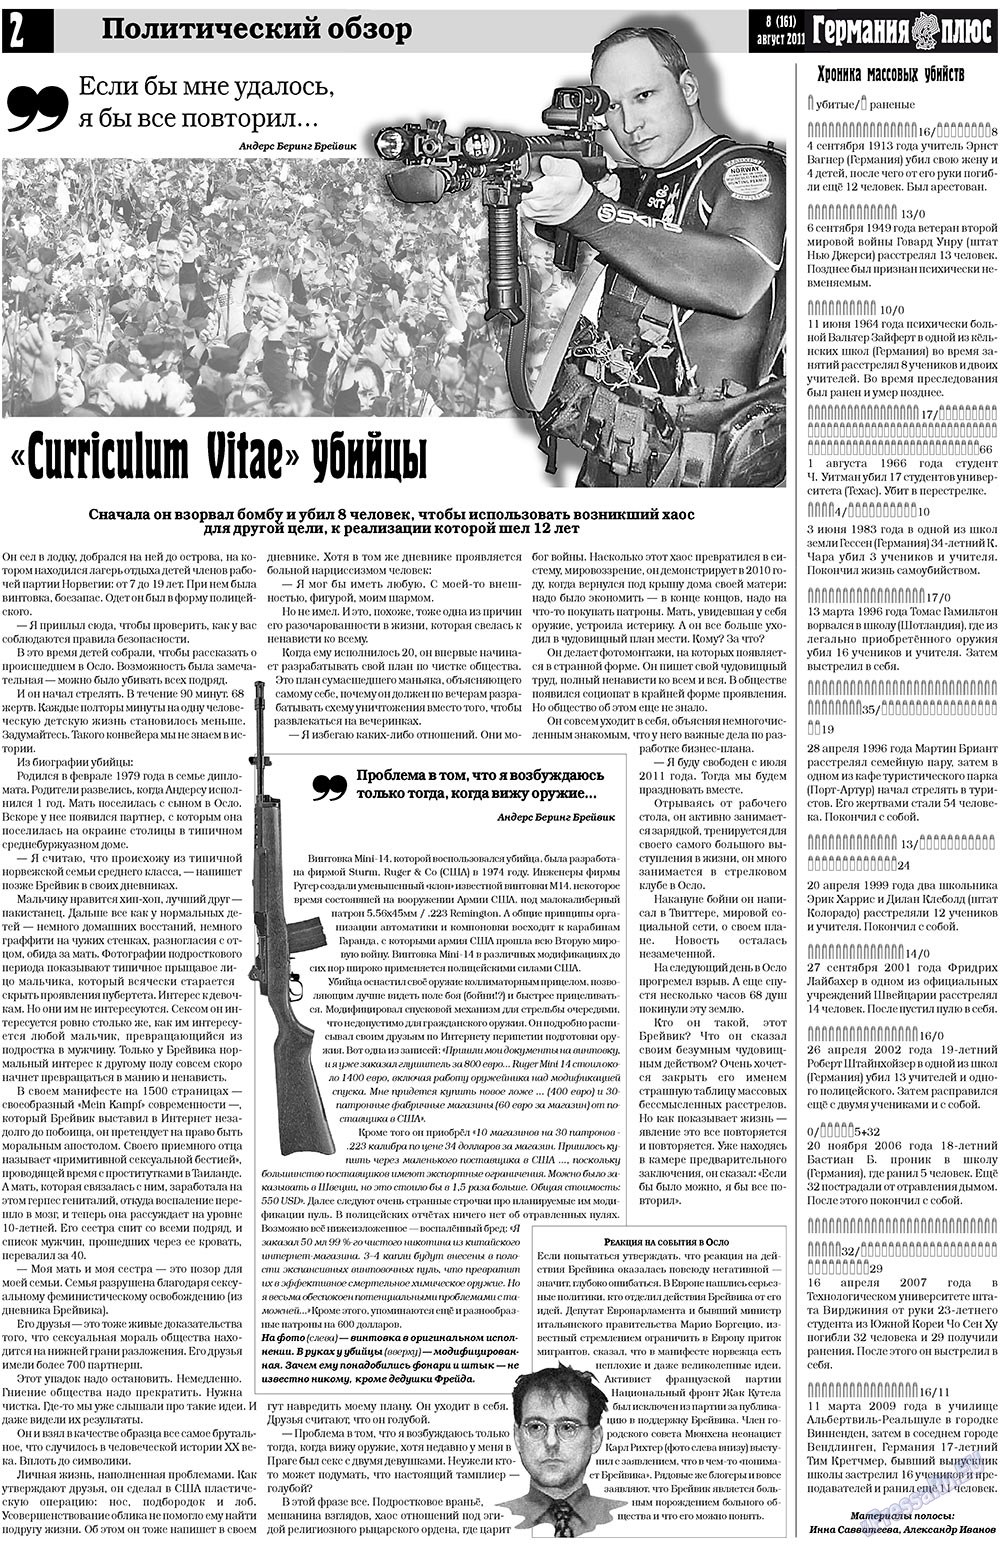 Германия плюс (газета). 2011 год, номер 8, стр. 2